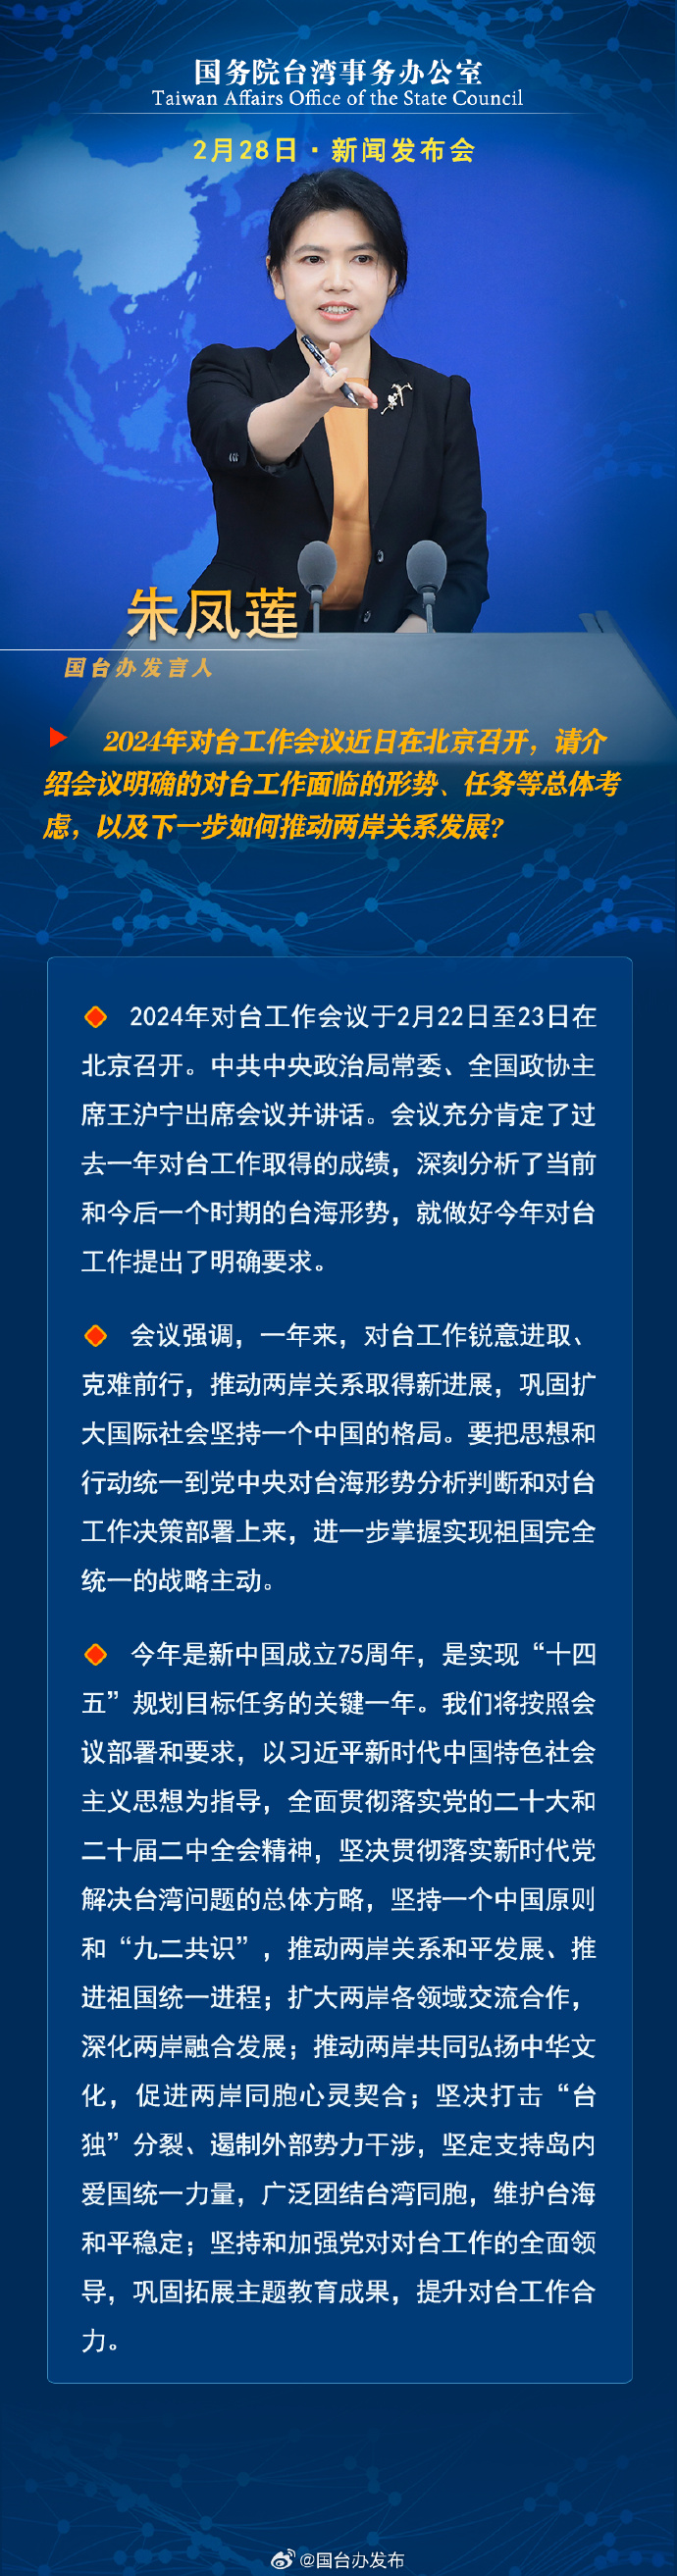 国务院台湾事务办公室2月28日新闻发布会